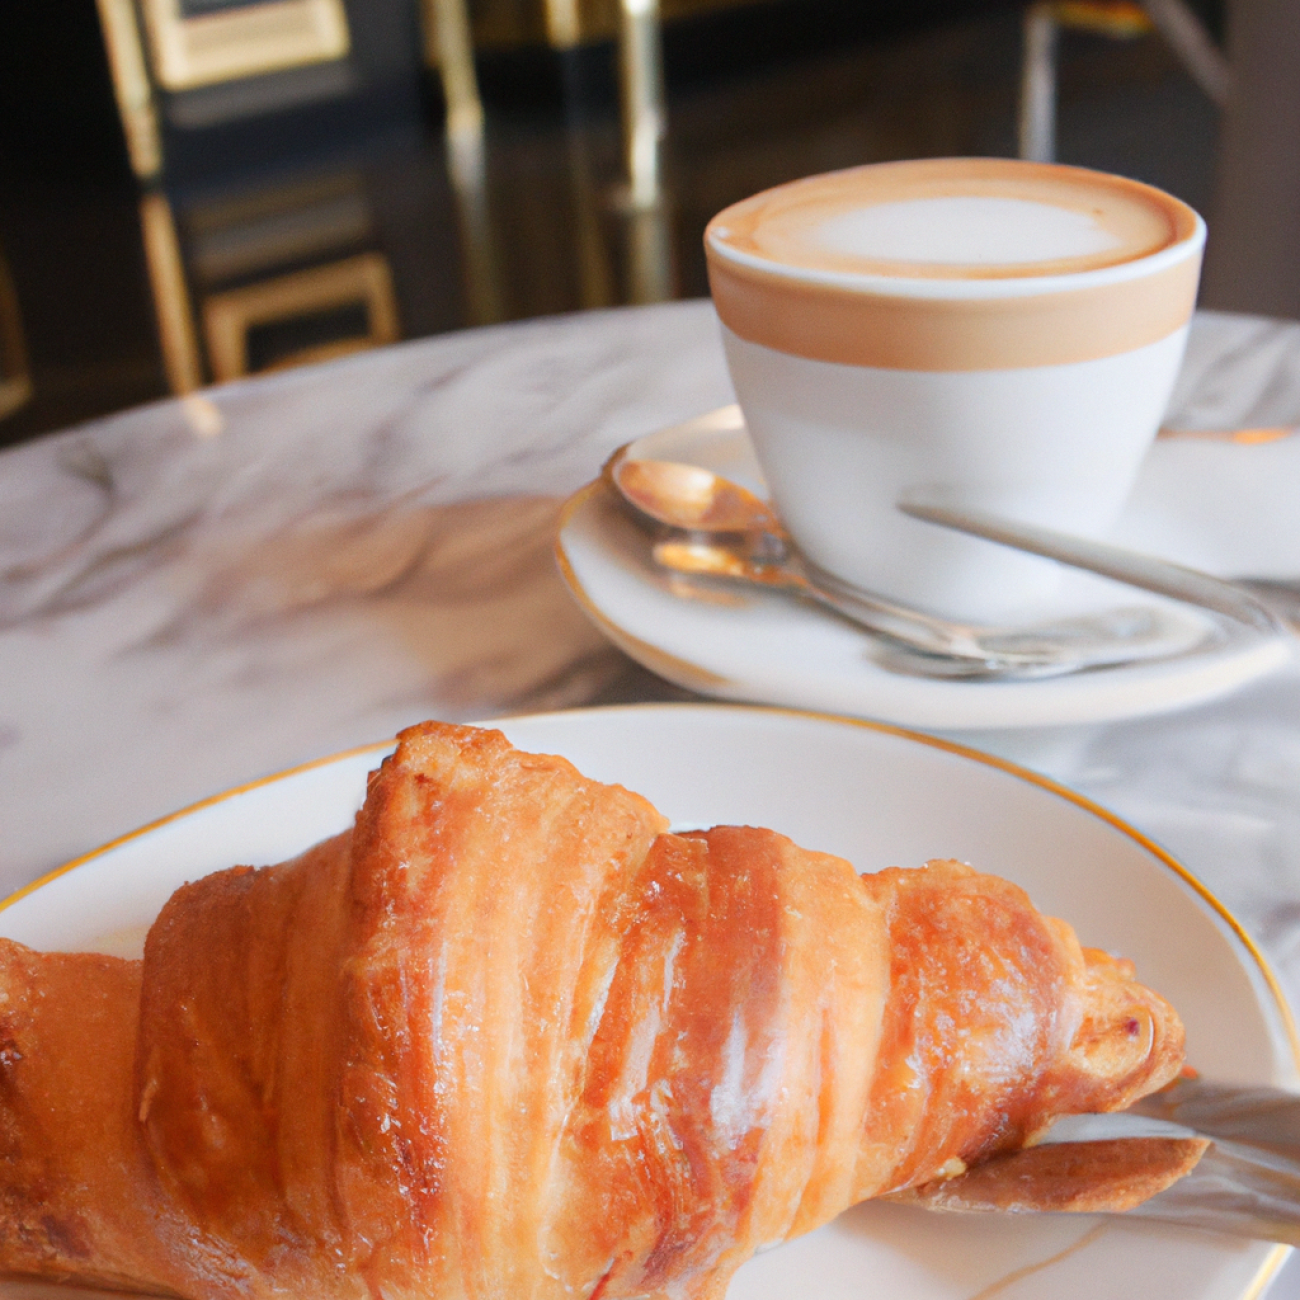 2. Café Louvre: Zaslouží si své renomé jako jedno z nejlepších míst pro croissanty v Praze